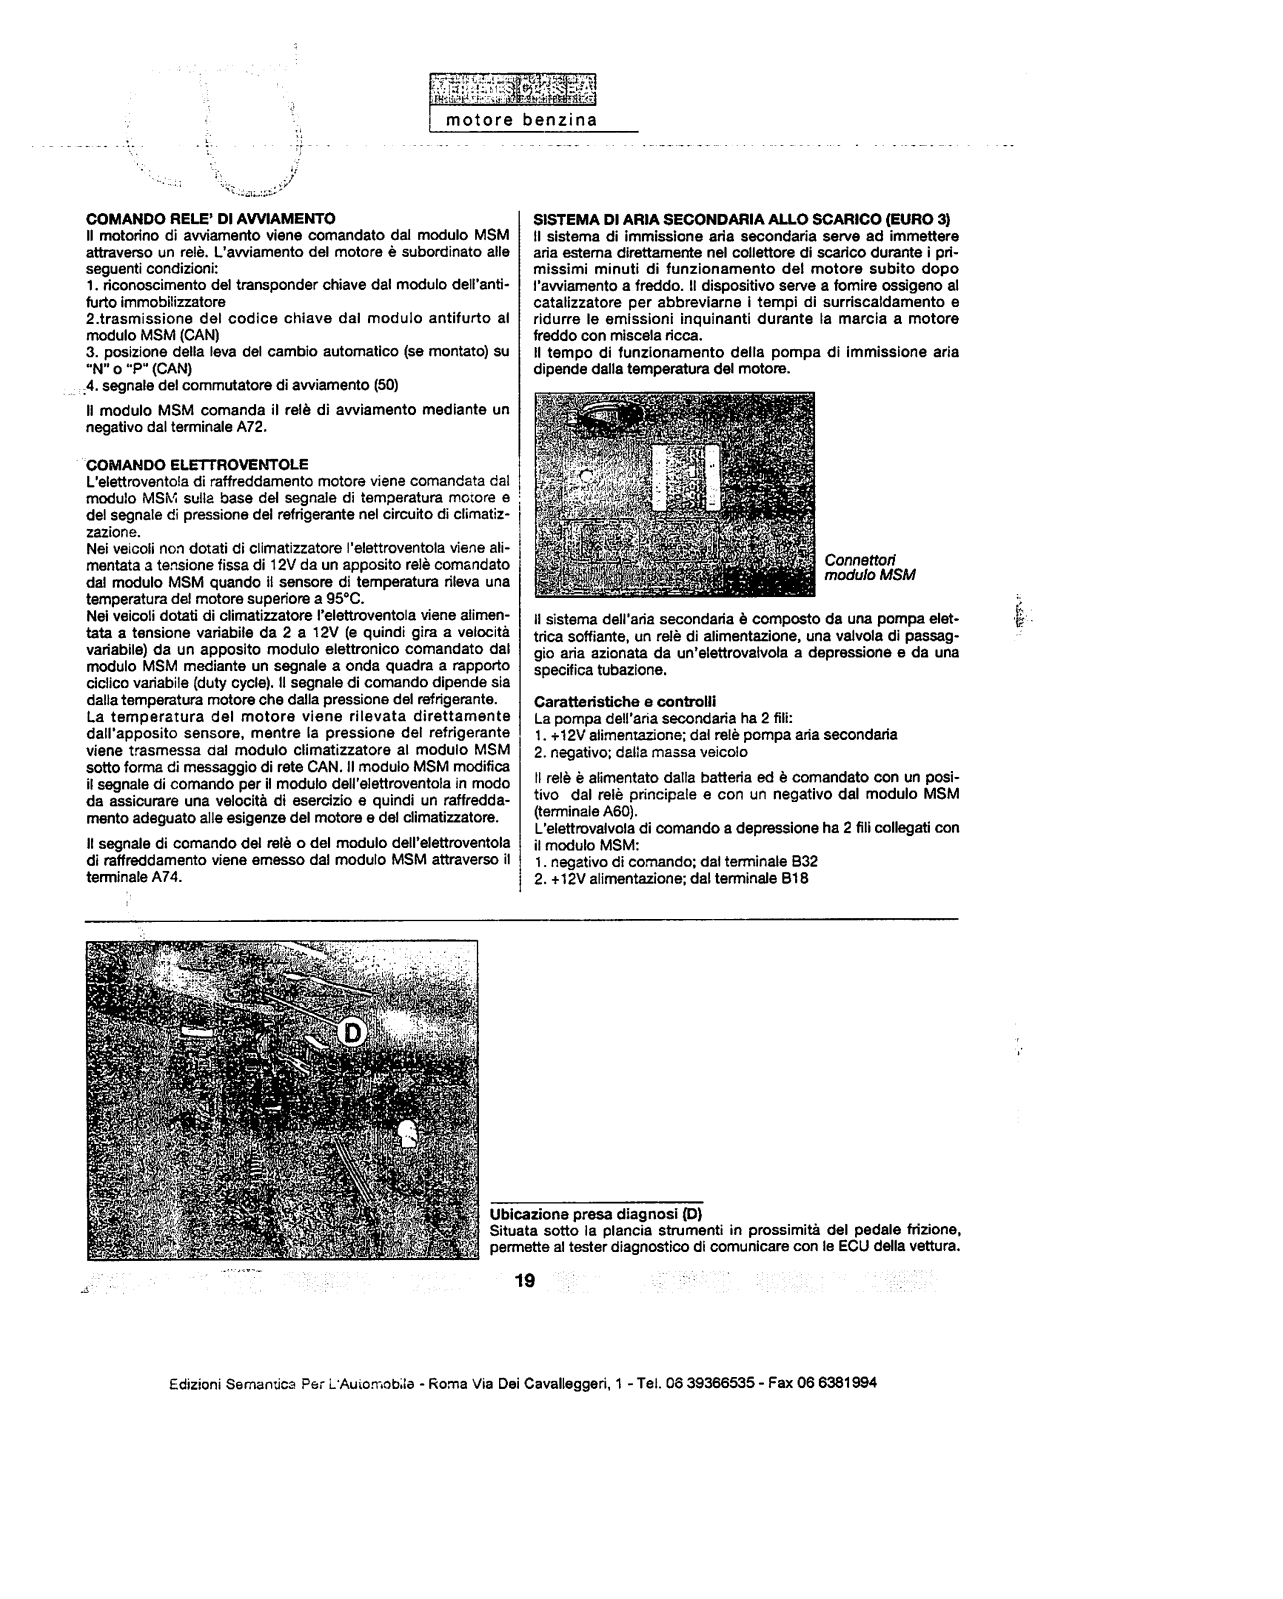 w168 - (W168): Manual técnico - tudo sobre - 1997 a 2004 - italiano 5mbxc2